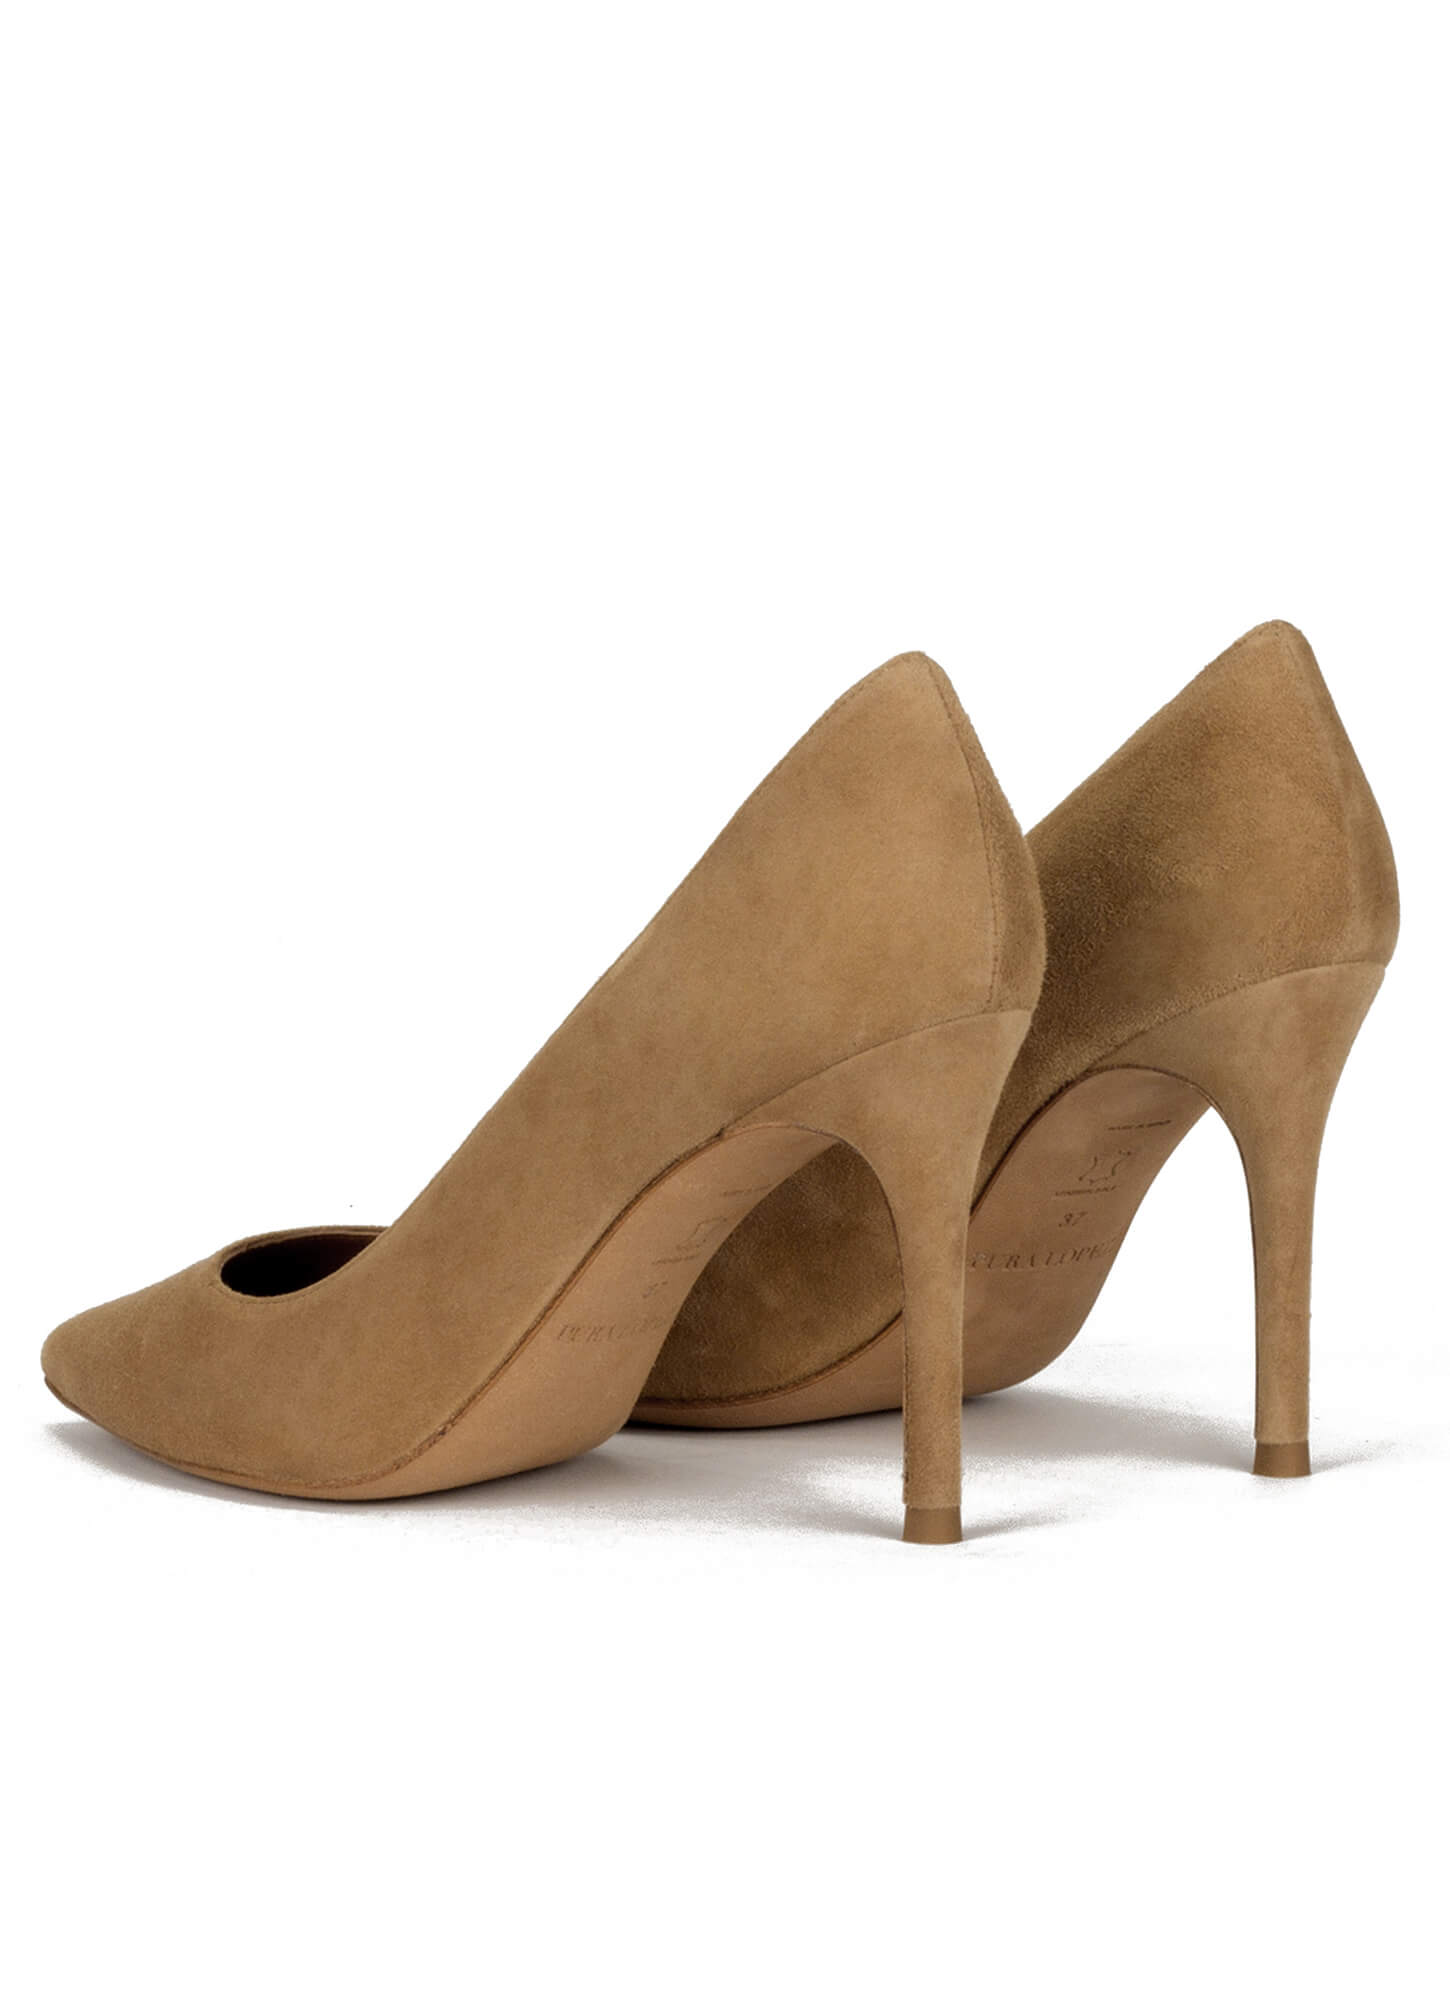 H&L Zapato Salón Mujer Vestir Camel Tacón Medio - Calzados Luceño